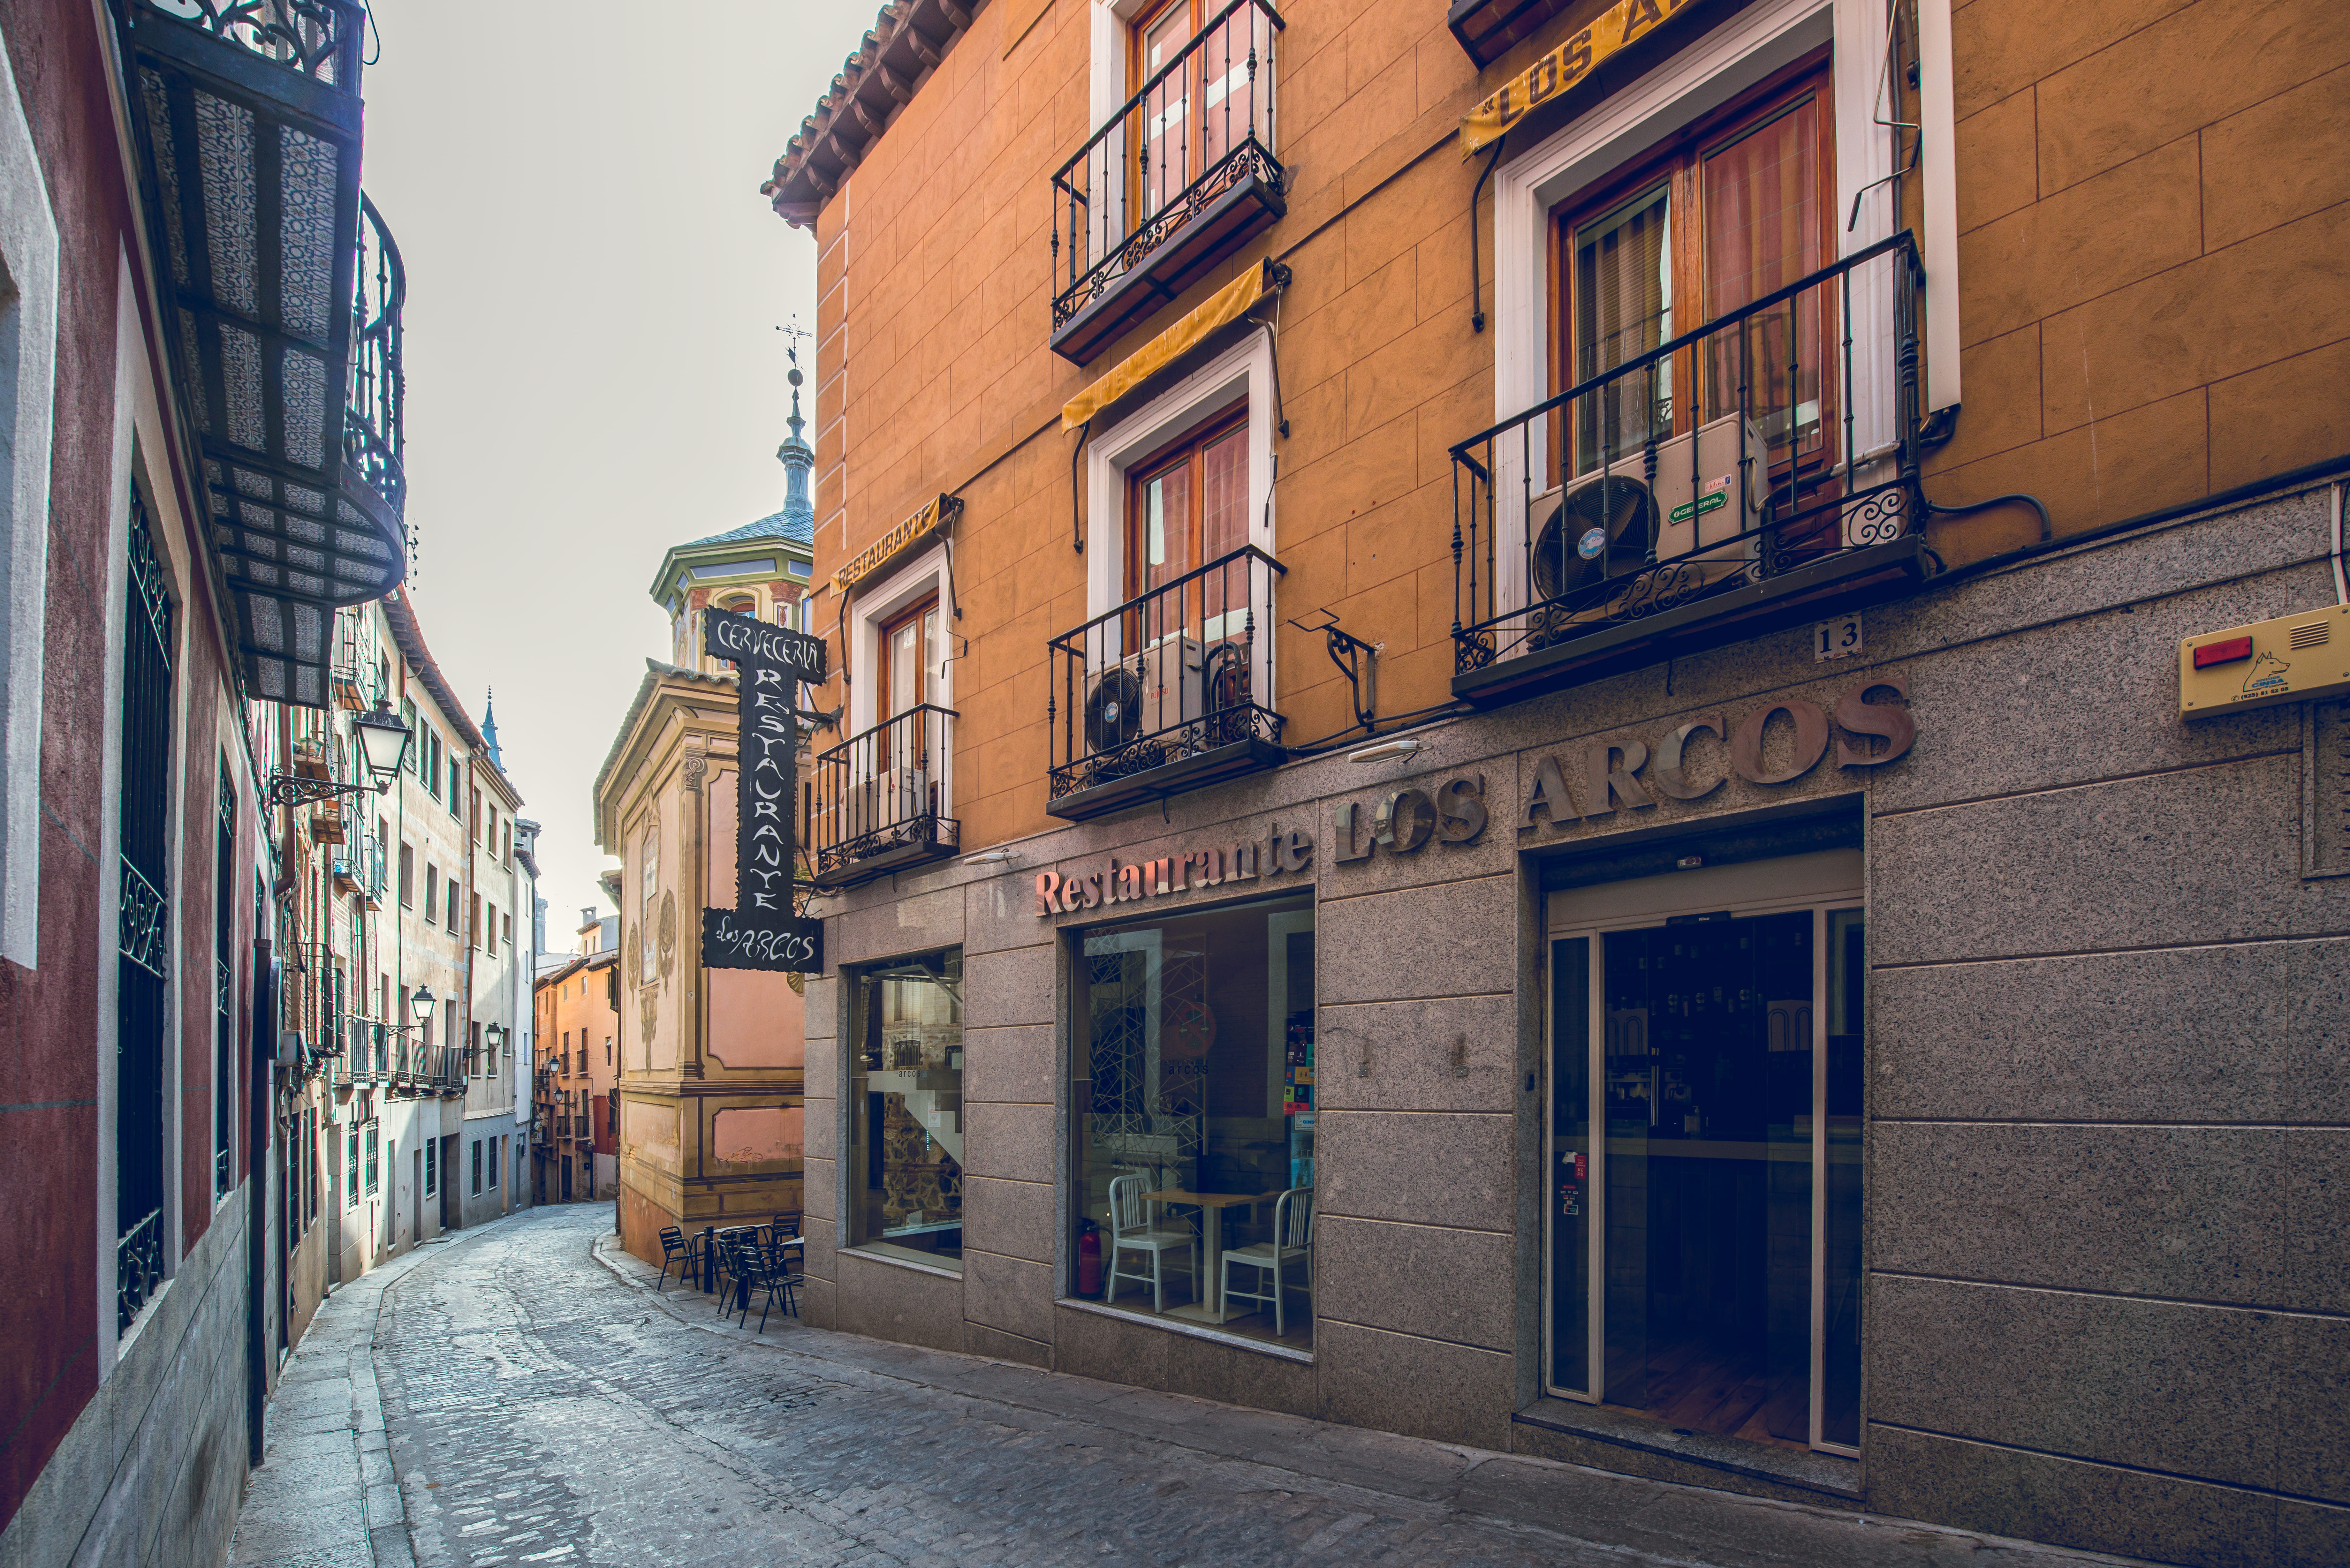 Restaurante Arcos de Toledo menús y comida casera de calidad